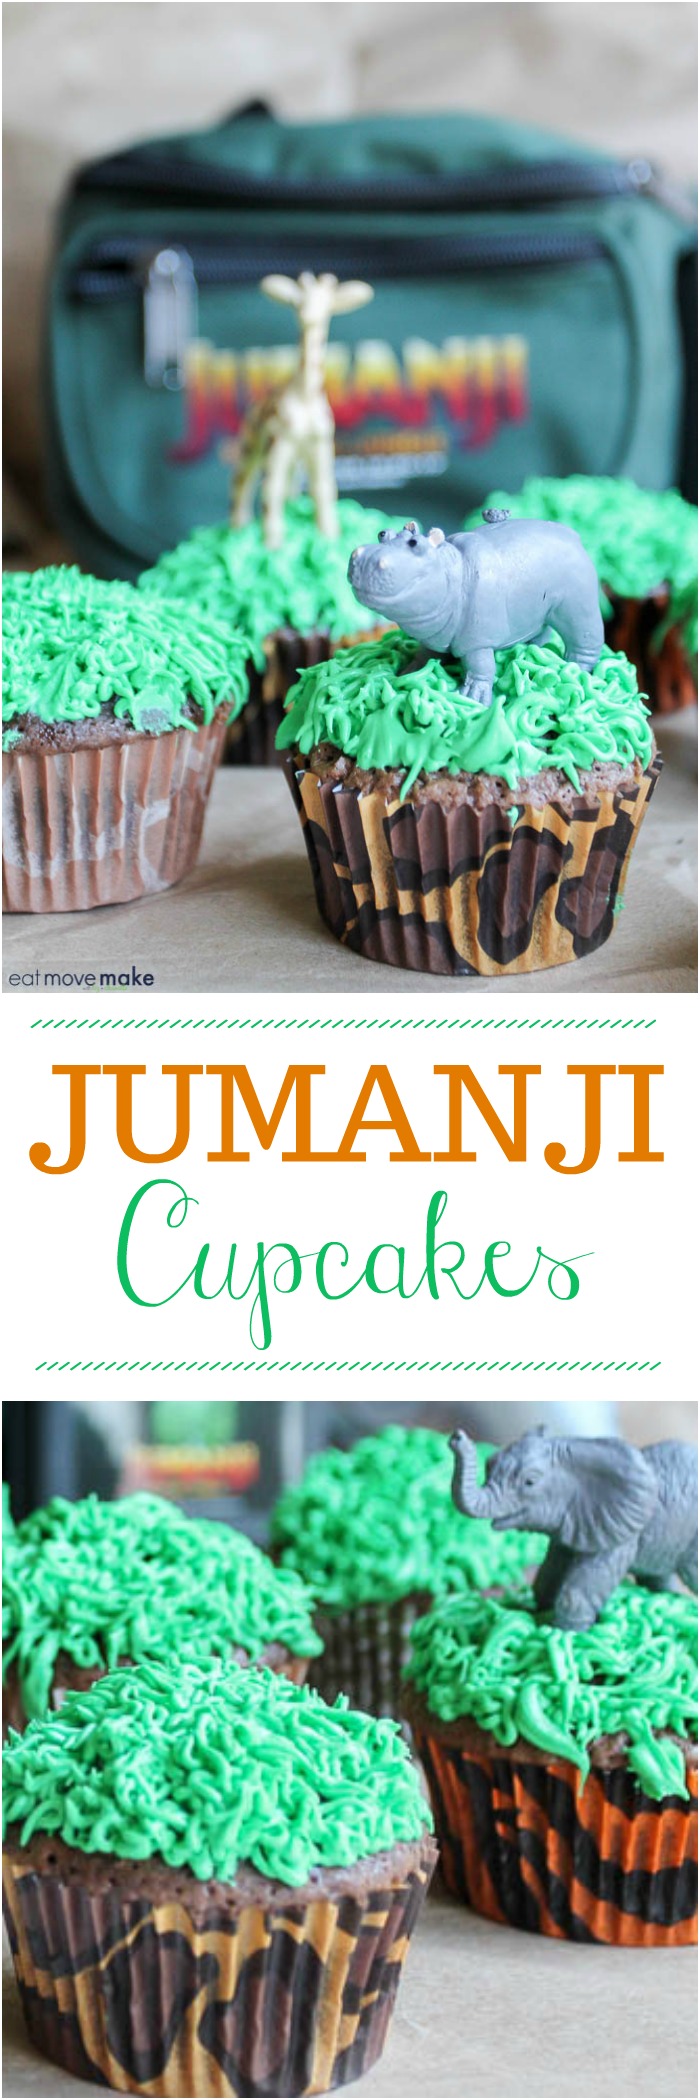 Jumanji Cupcakes